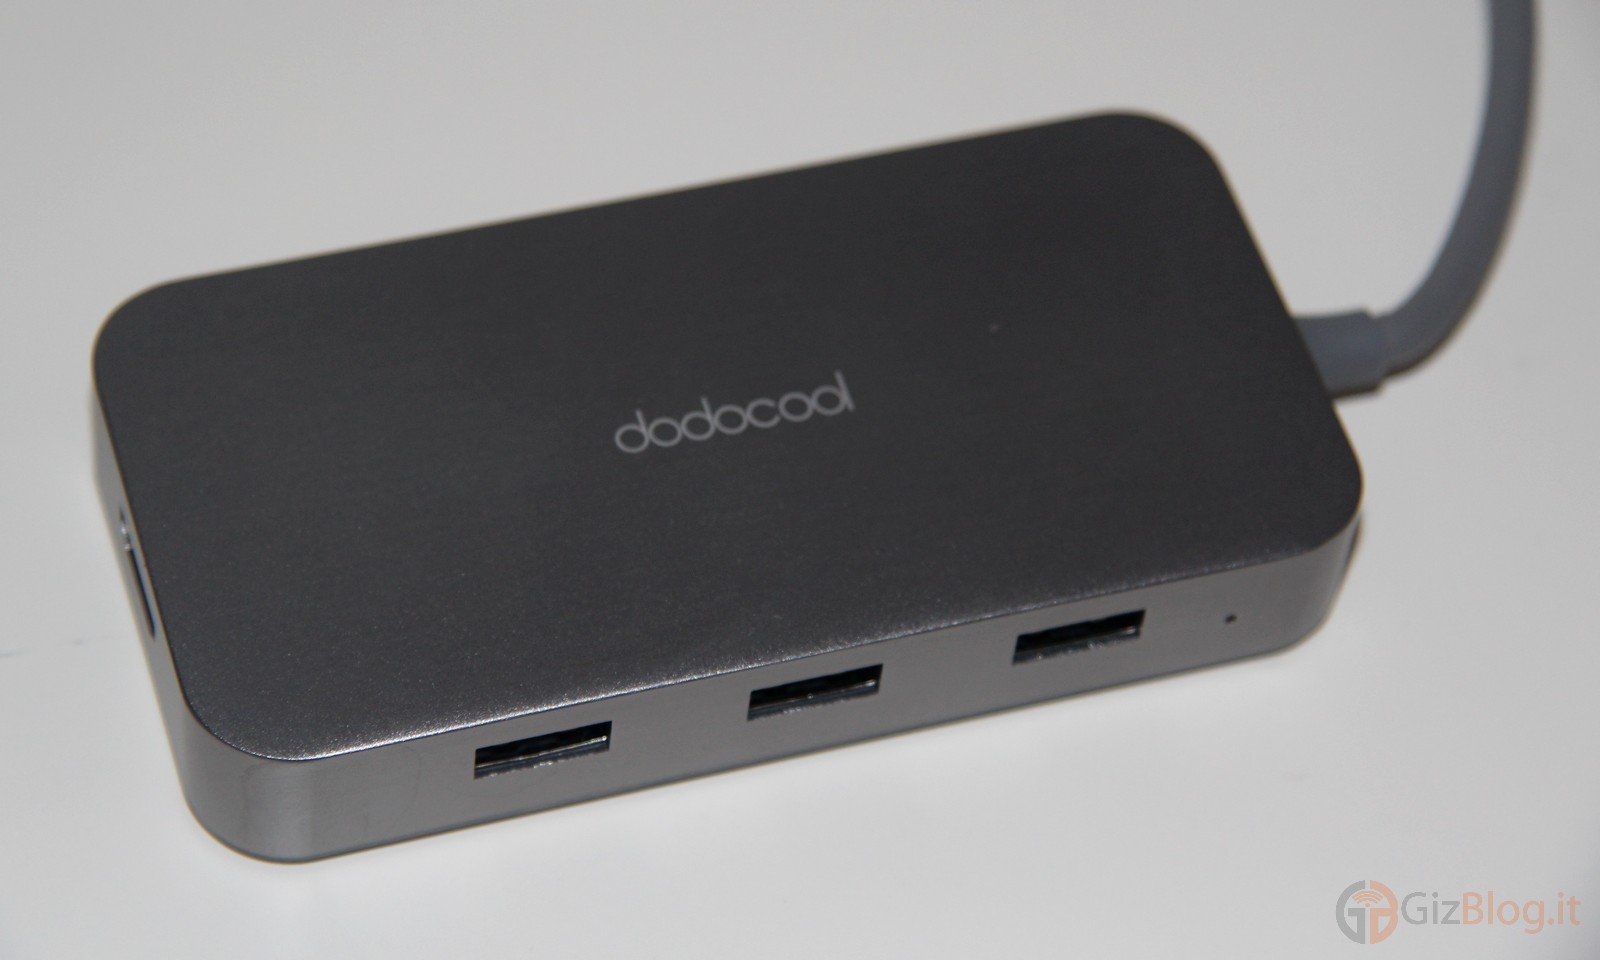 Dodocool DC50 Hub USB type C 6 in 1 Ethernet HDMI